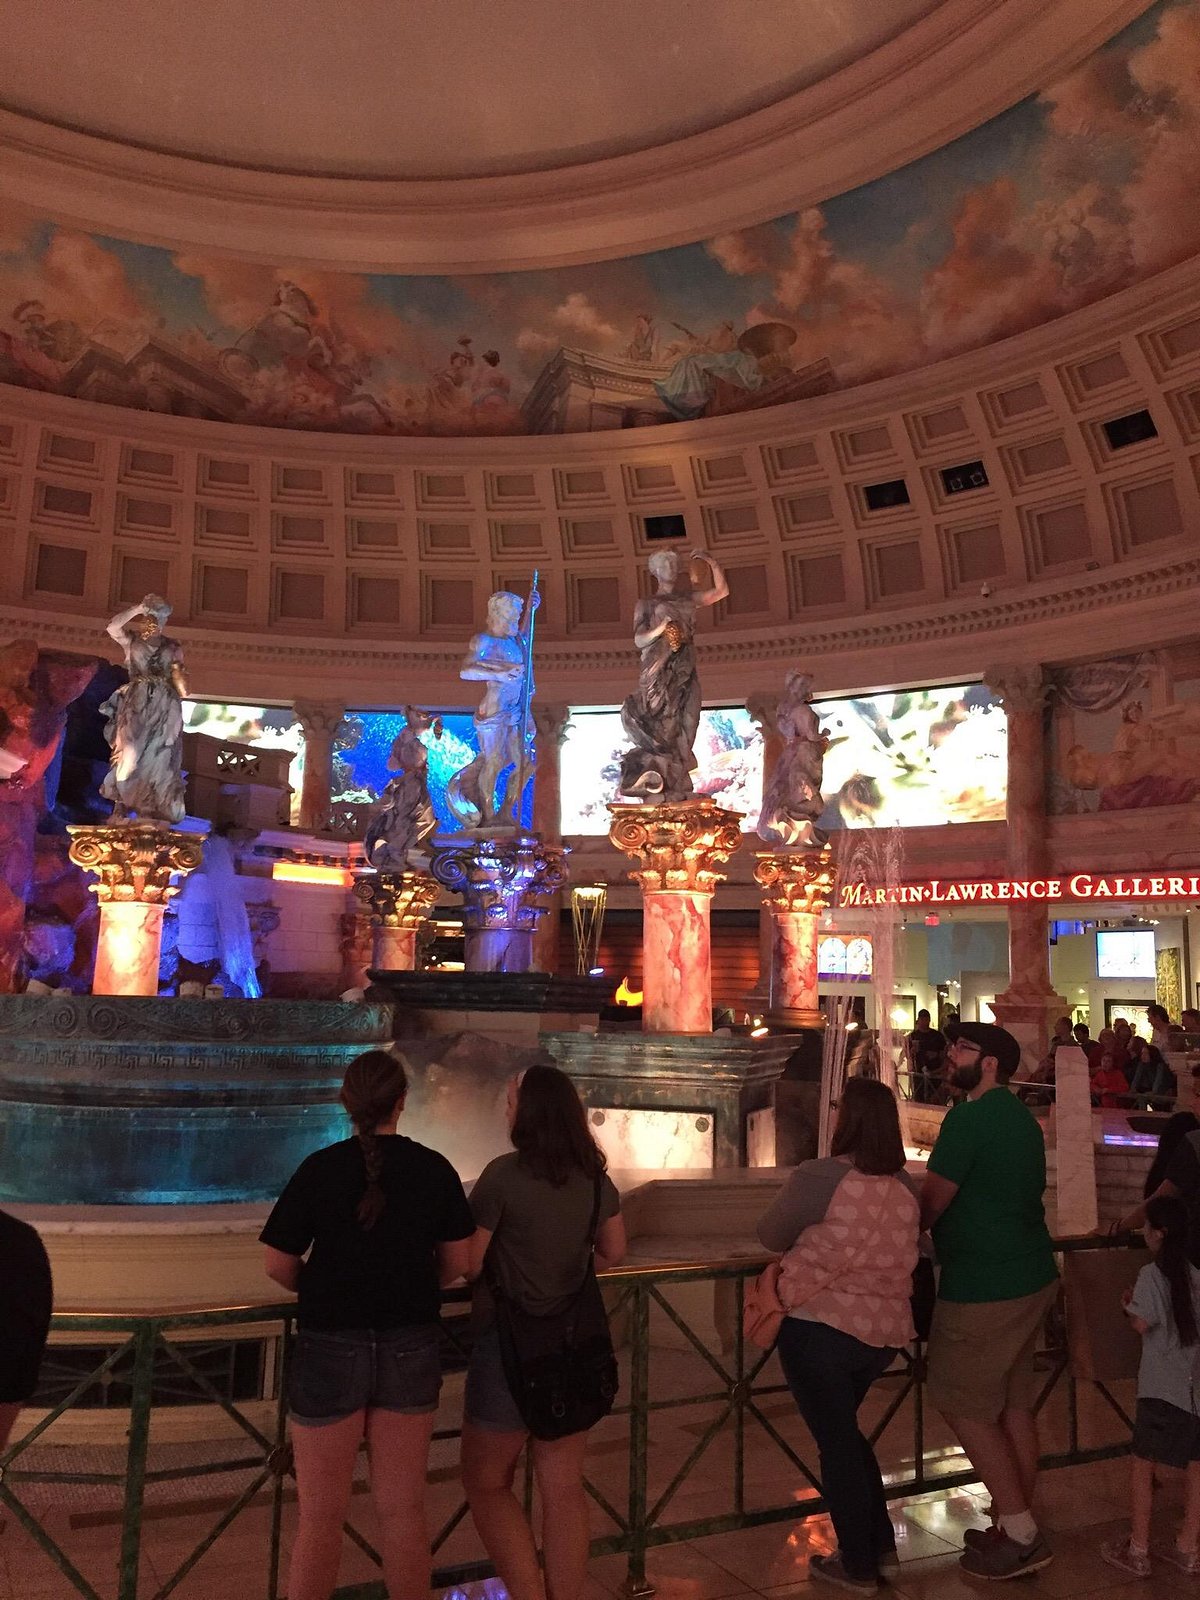 Caesars Palace Las Vegas Shows: Best Concerts & Entertainment